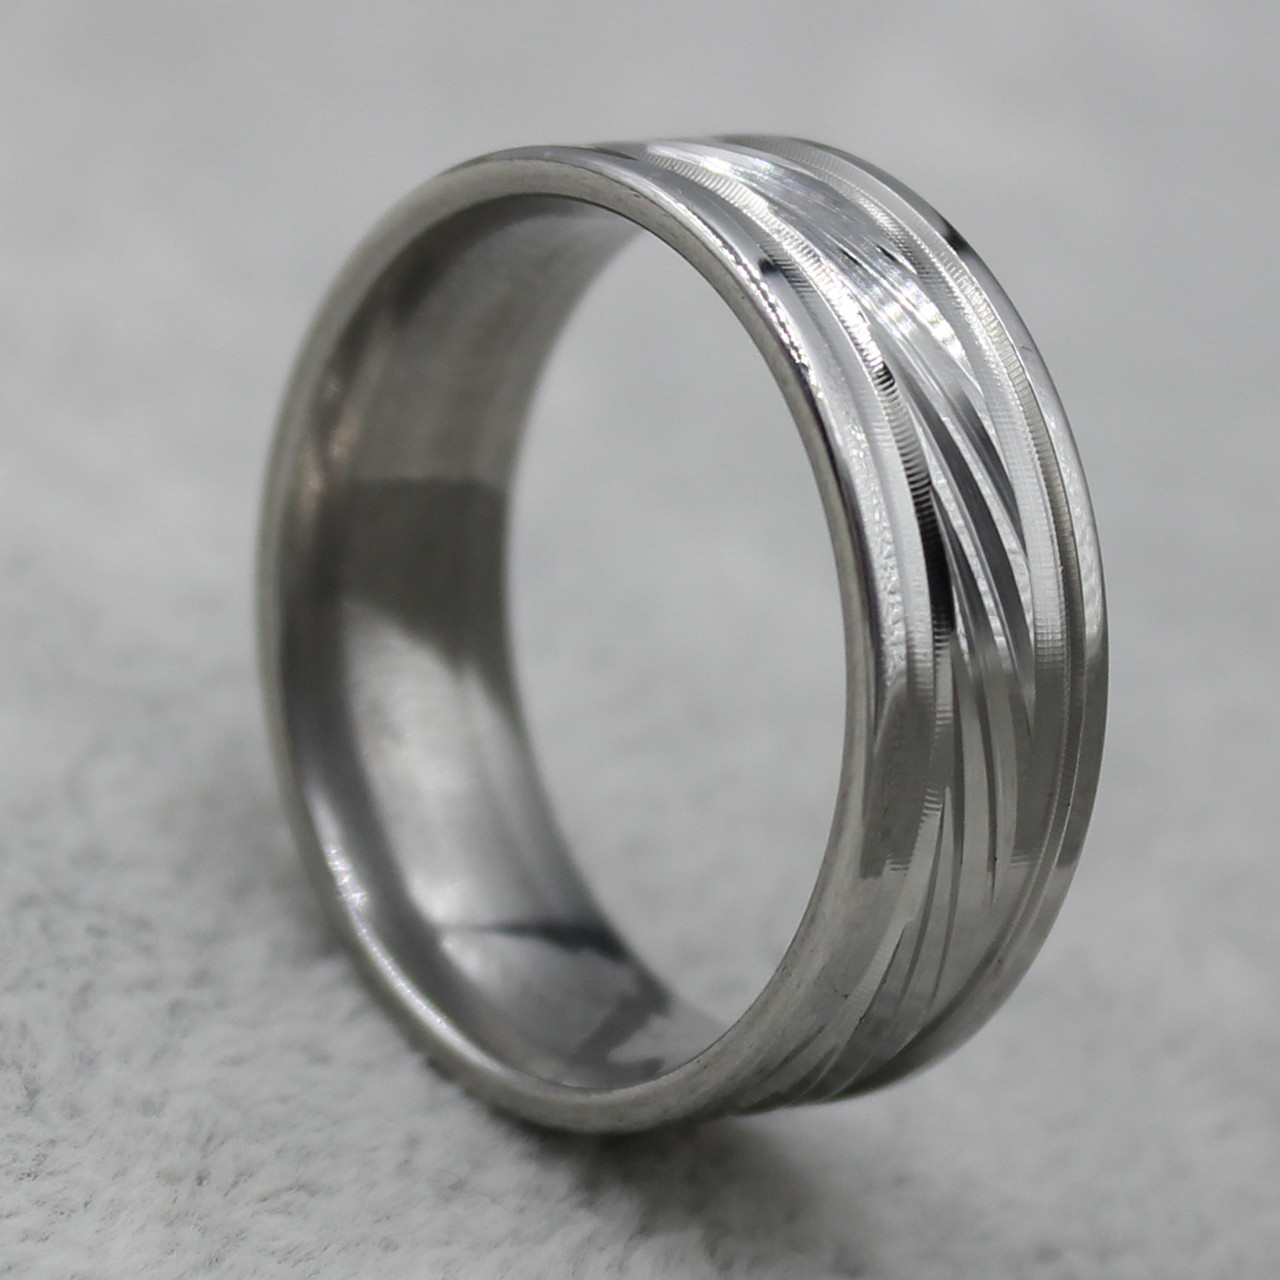 Мужское кольцо серебристое от Stainless SteeL нержавеющая сталь лазерный рисунок нарезки 8 мм ширина